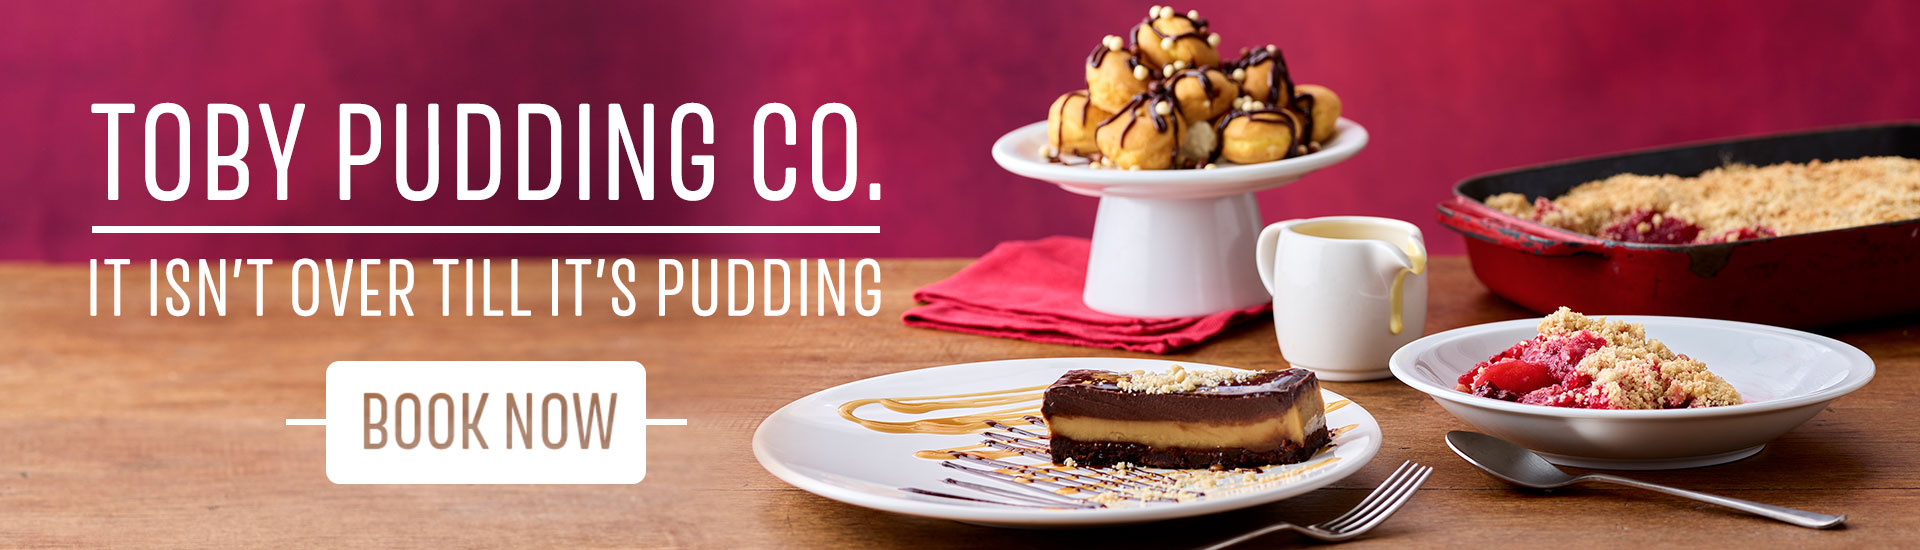 puddings-banner.jpg